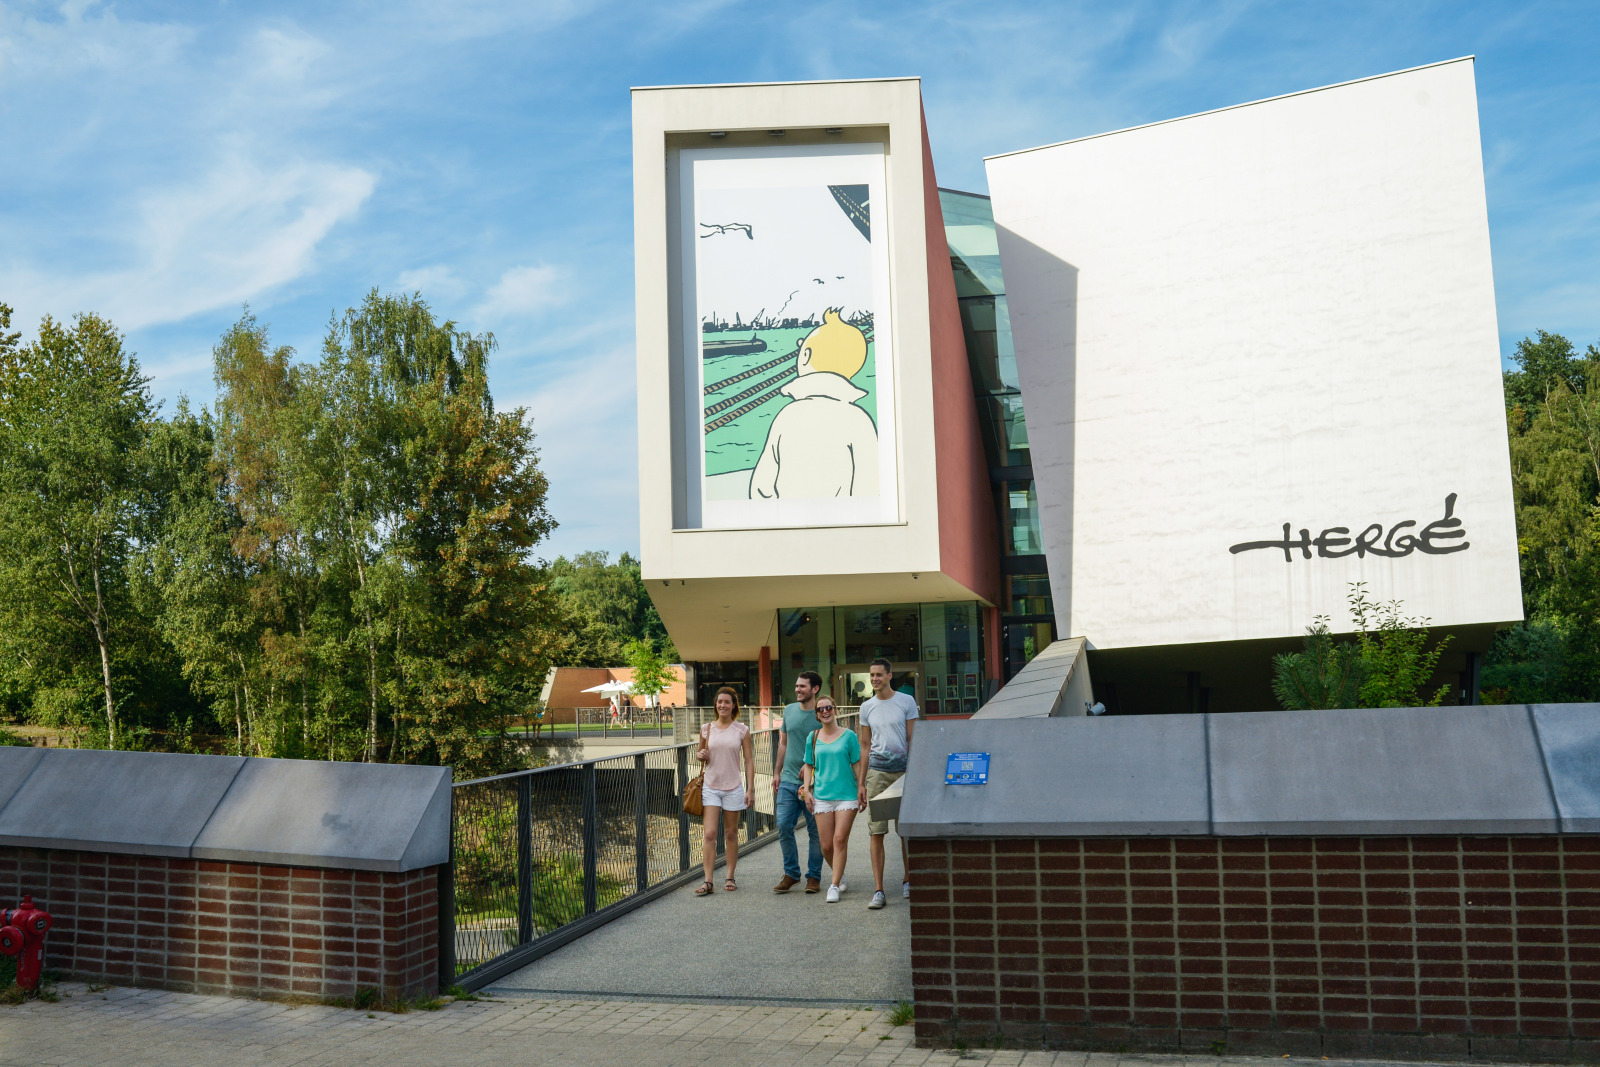 Vue extérieure du bâtiment du musée Hergé avec quatre visiteurs qui en sortent